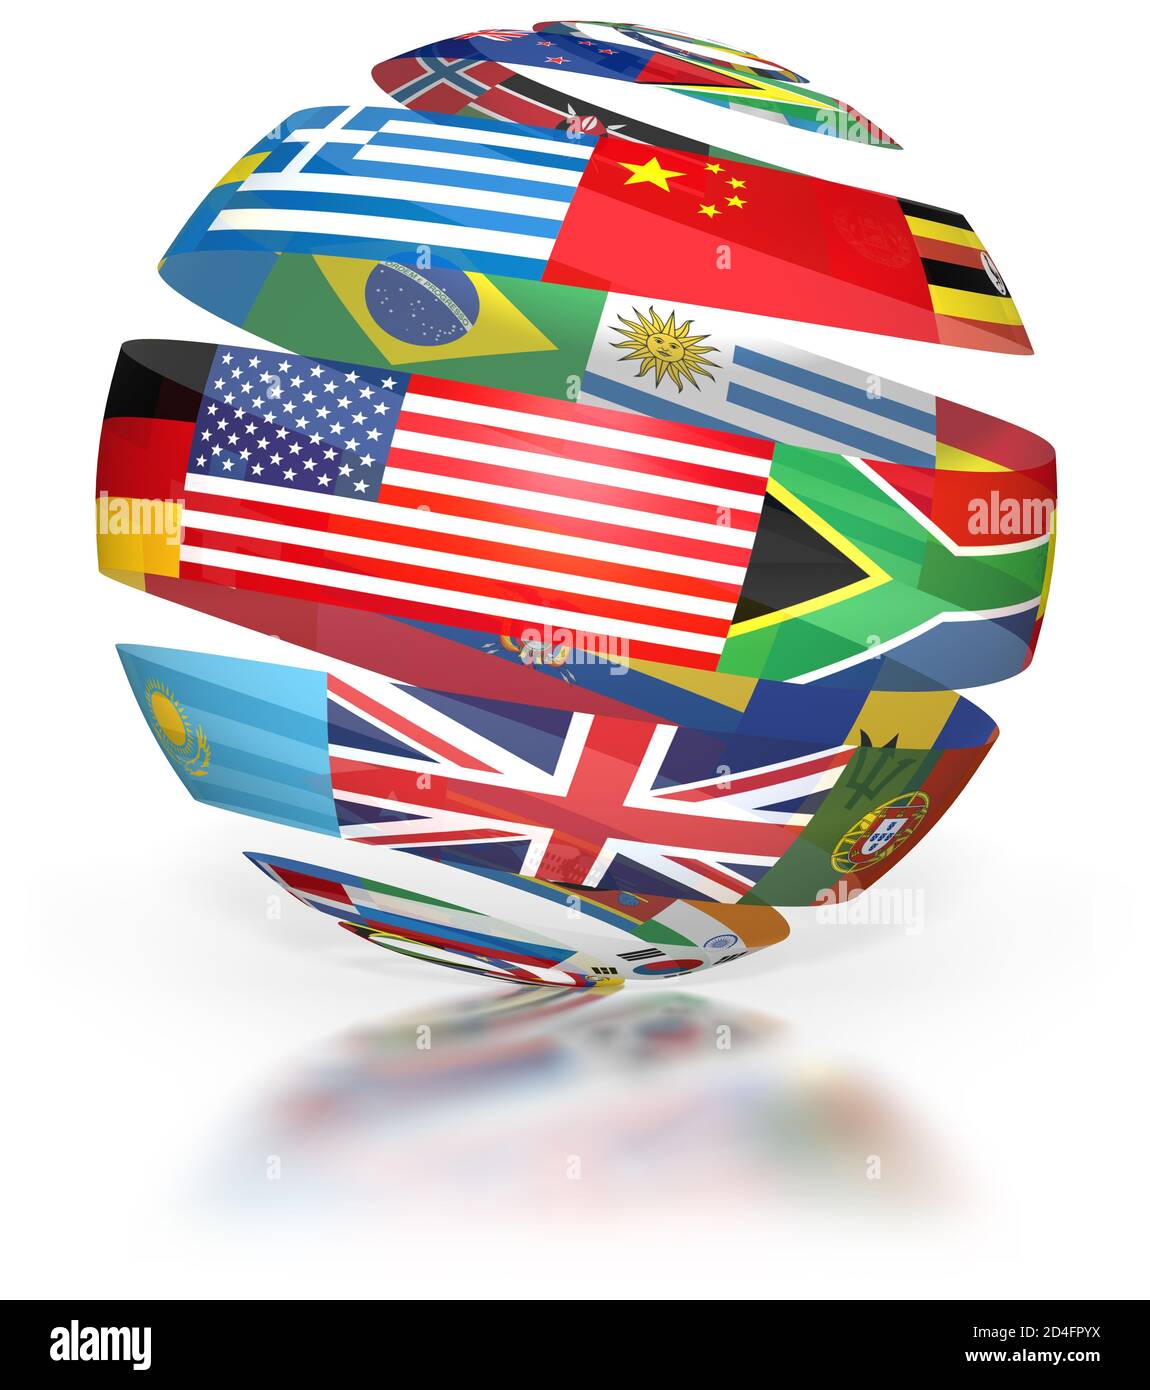 Globo de banderas del mundo, espiral mostrando símbolos internacionales, cinta de fondo blanco Foto de stock